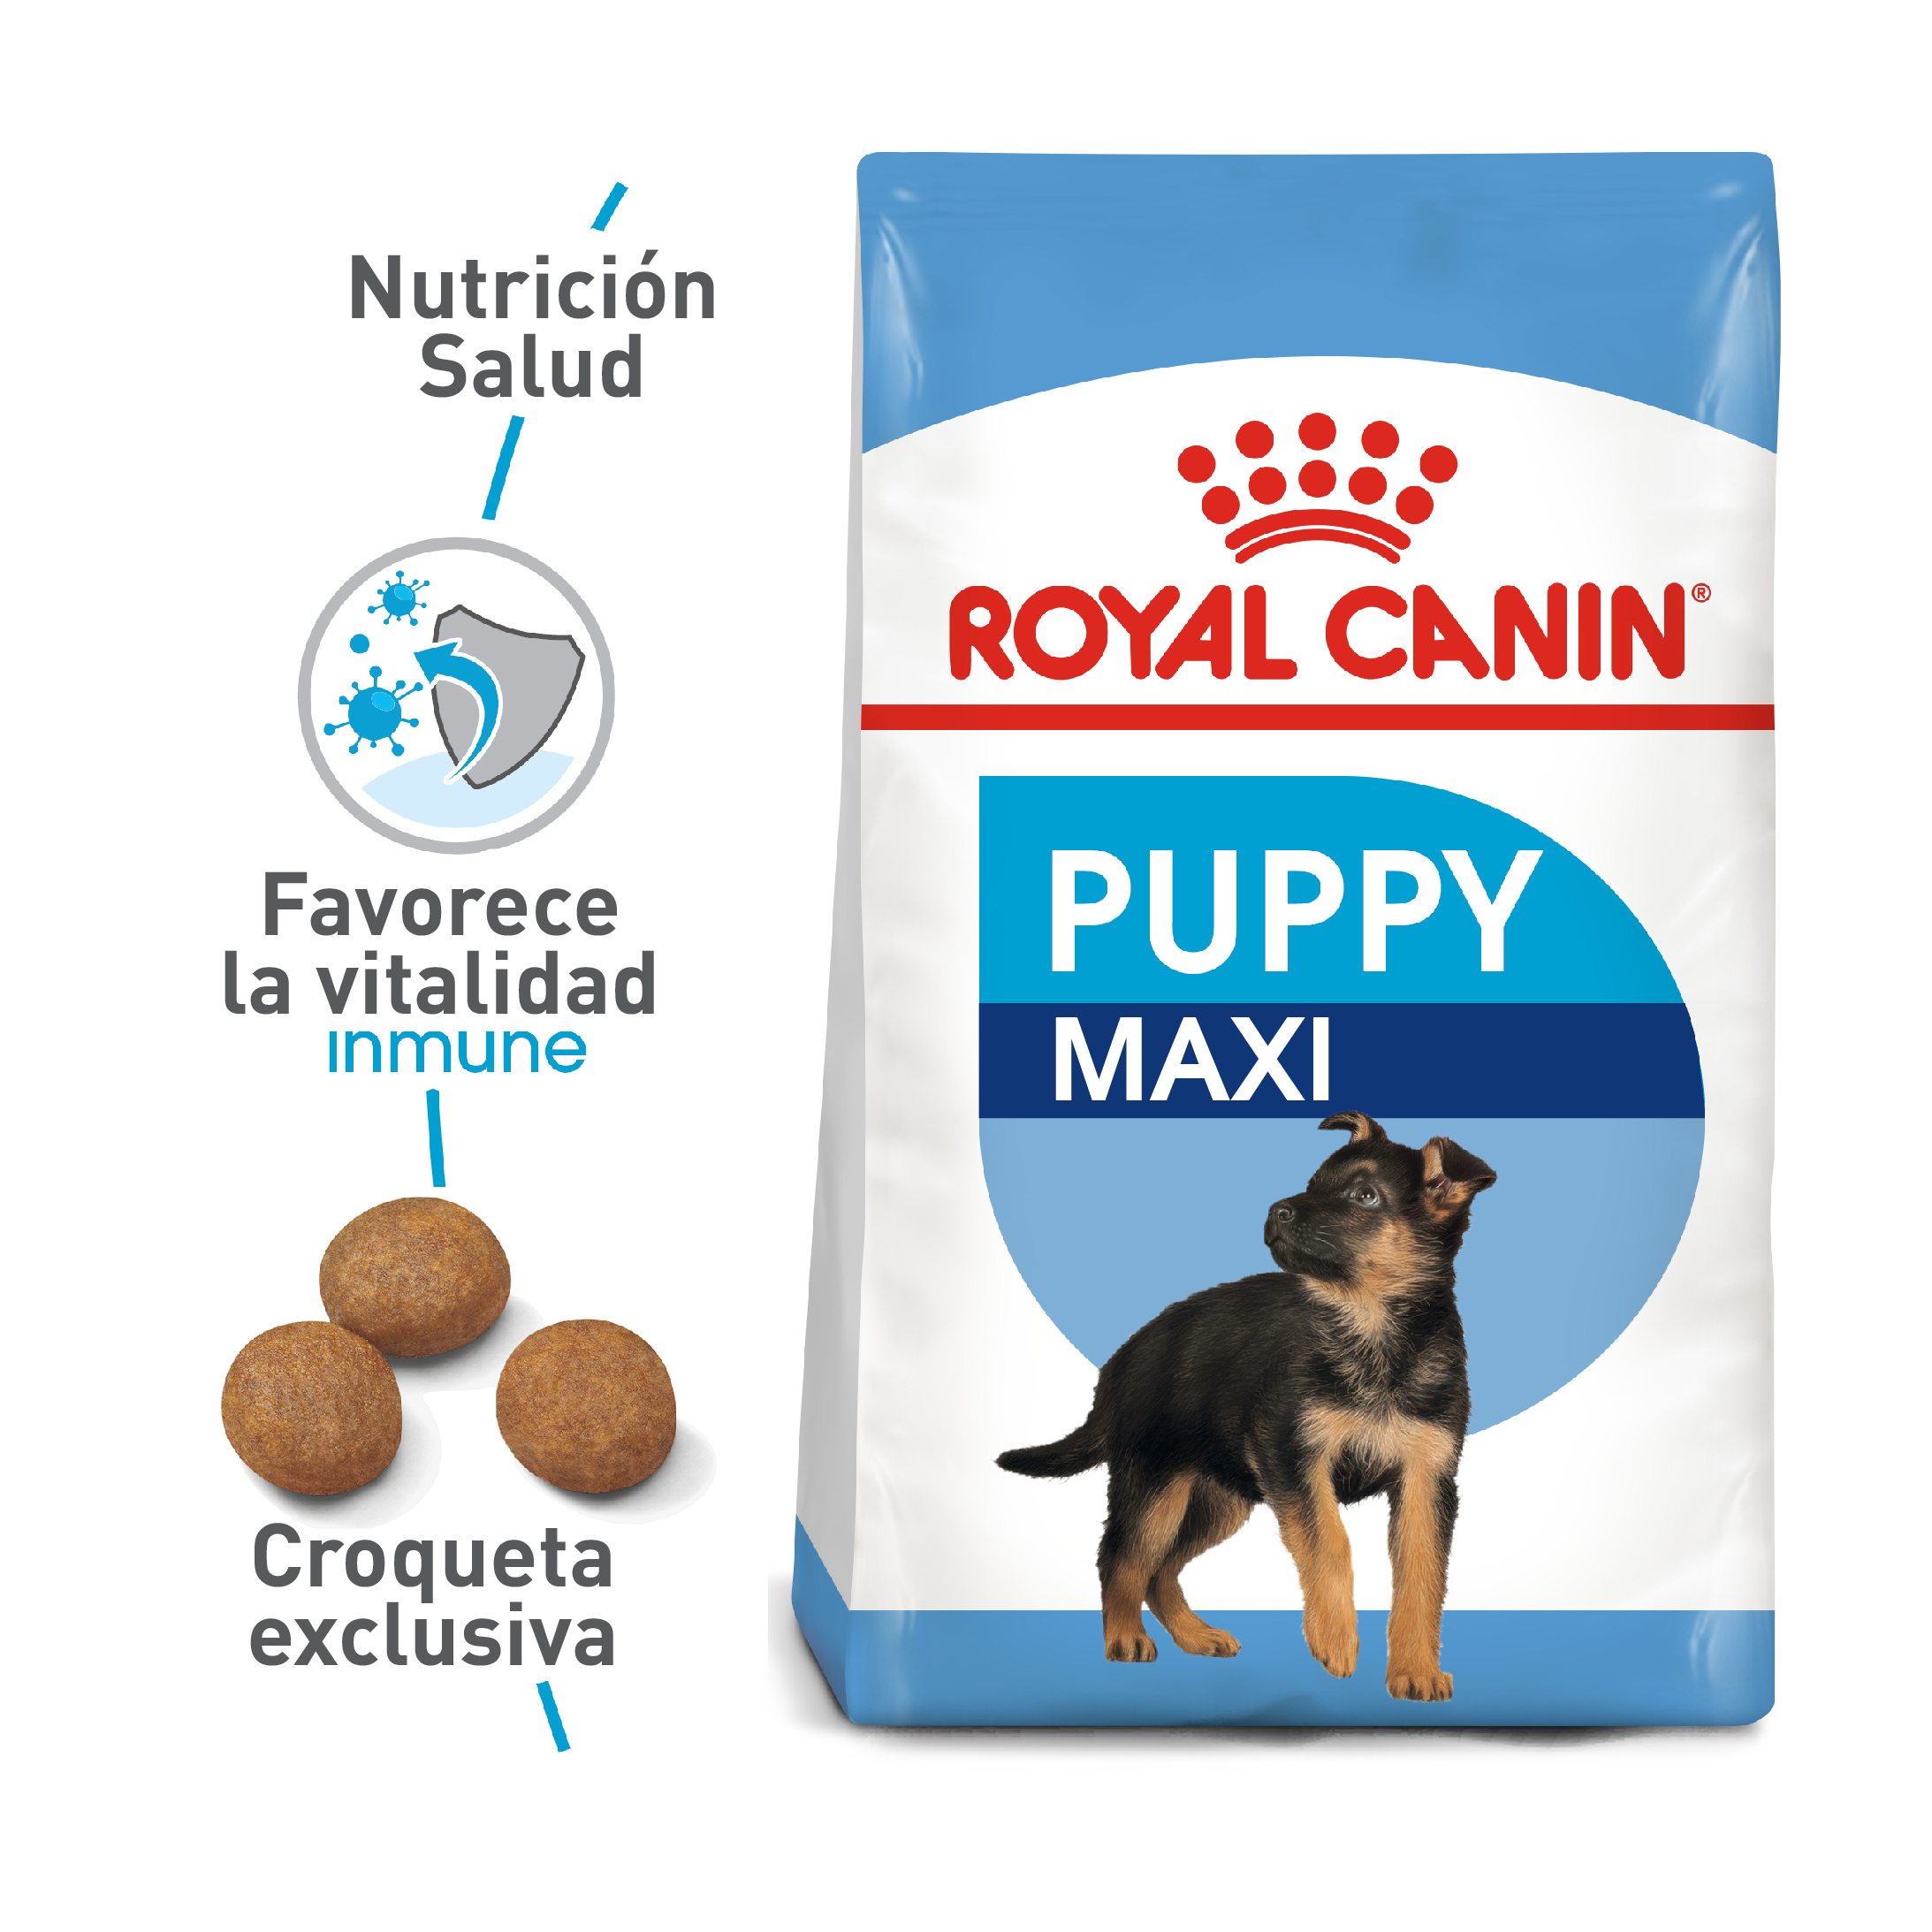 Royal Canin - Maxi Puppy